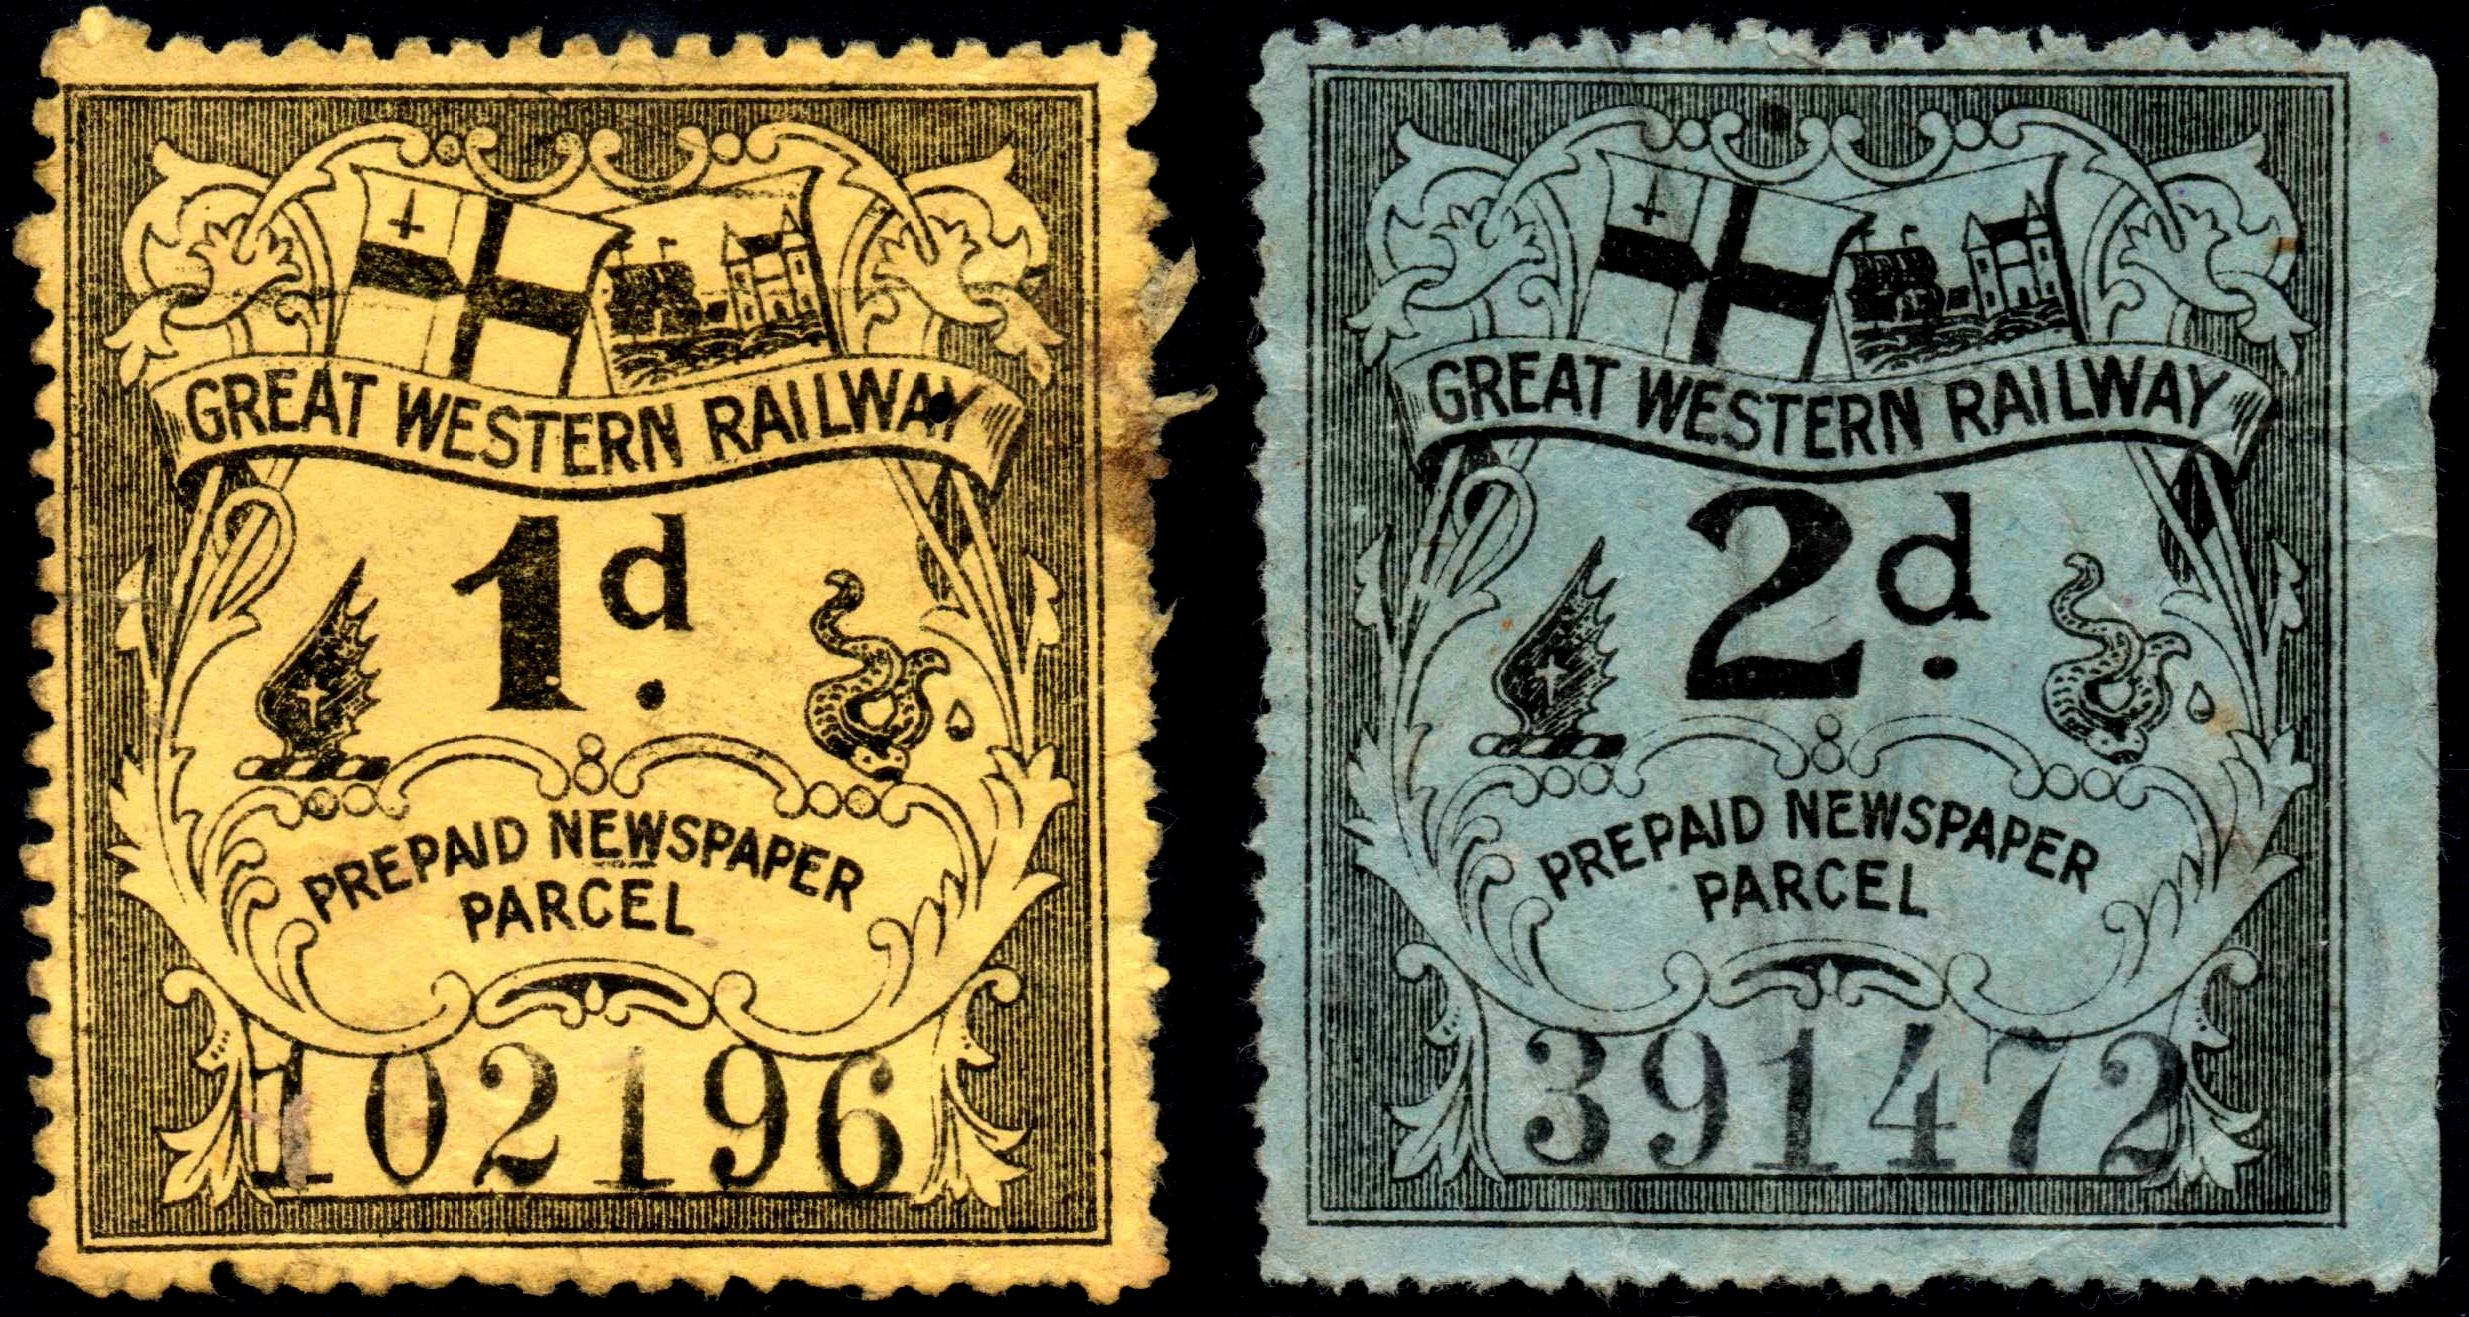 Great Western Railway prepaid newspaper parcel stamps